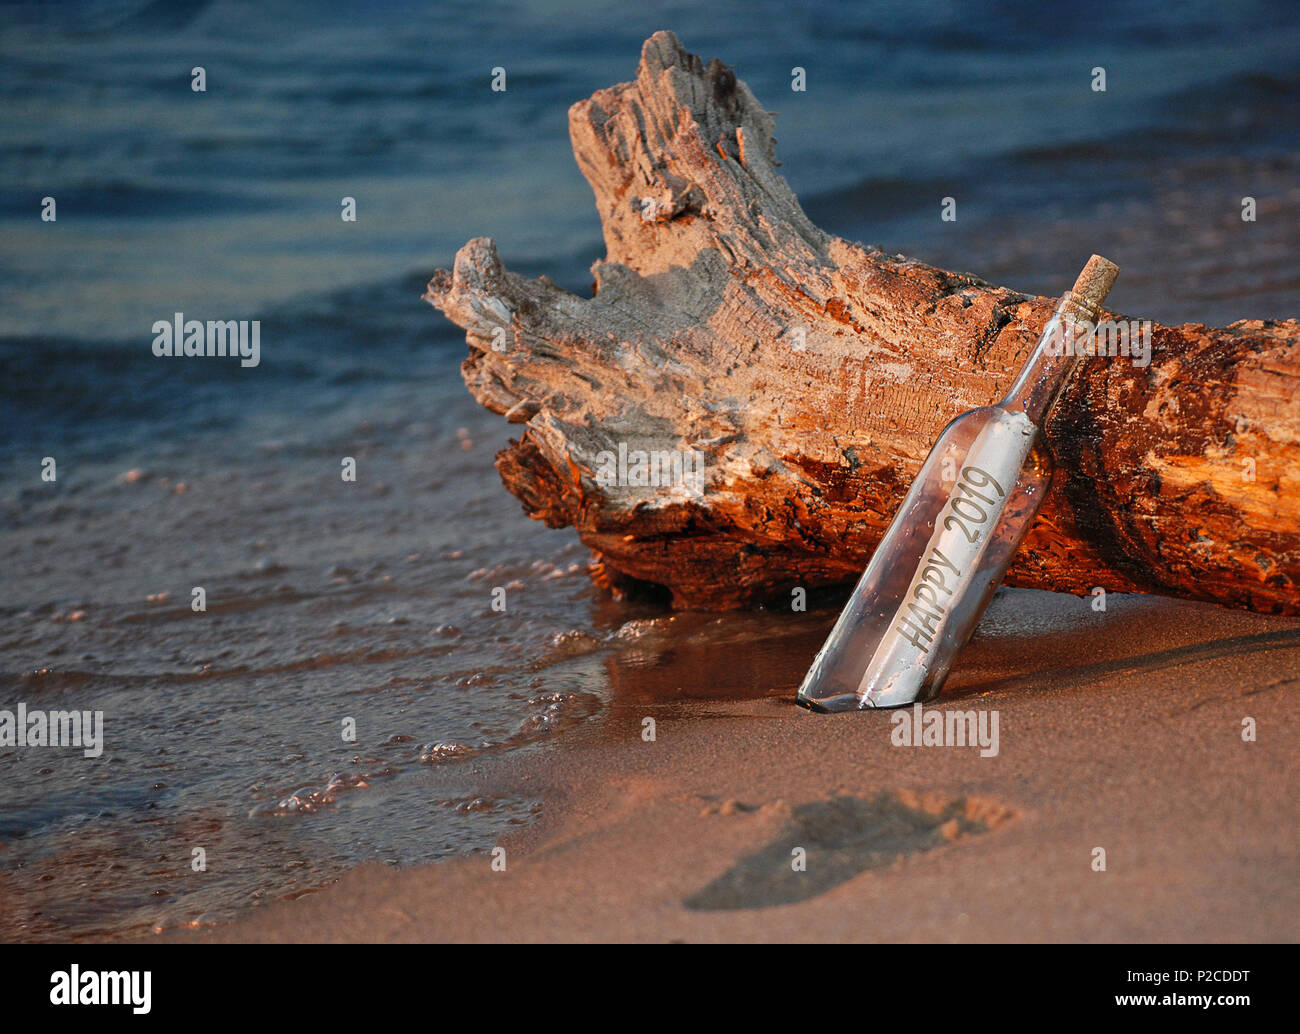 Nouvelle année 2019 message dans une bouteille avec driftwood log on beach Banque D'Images